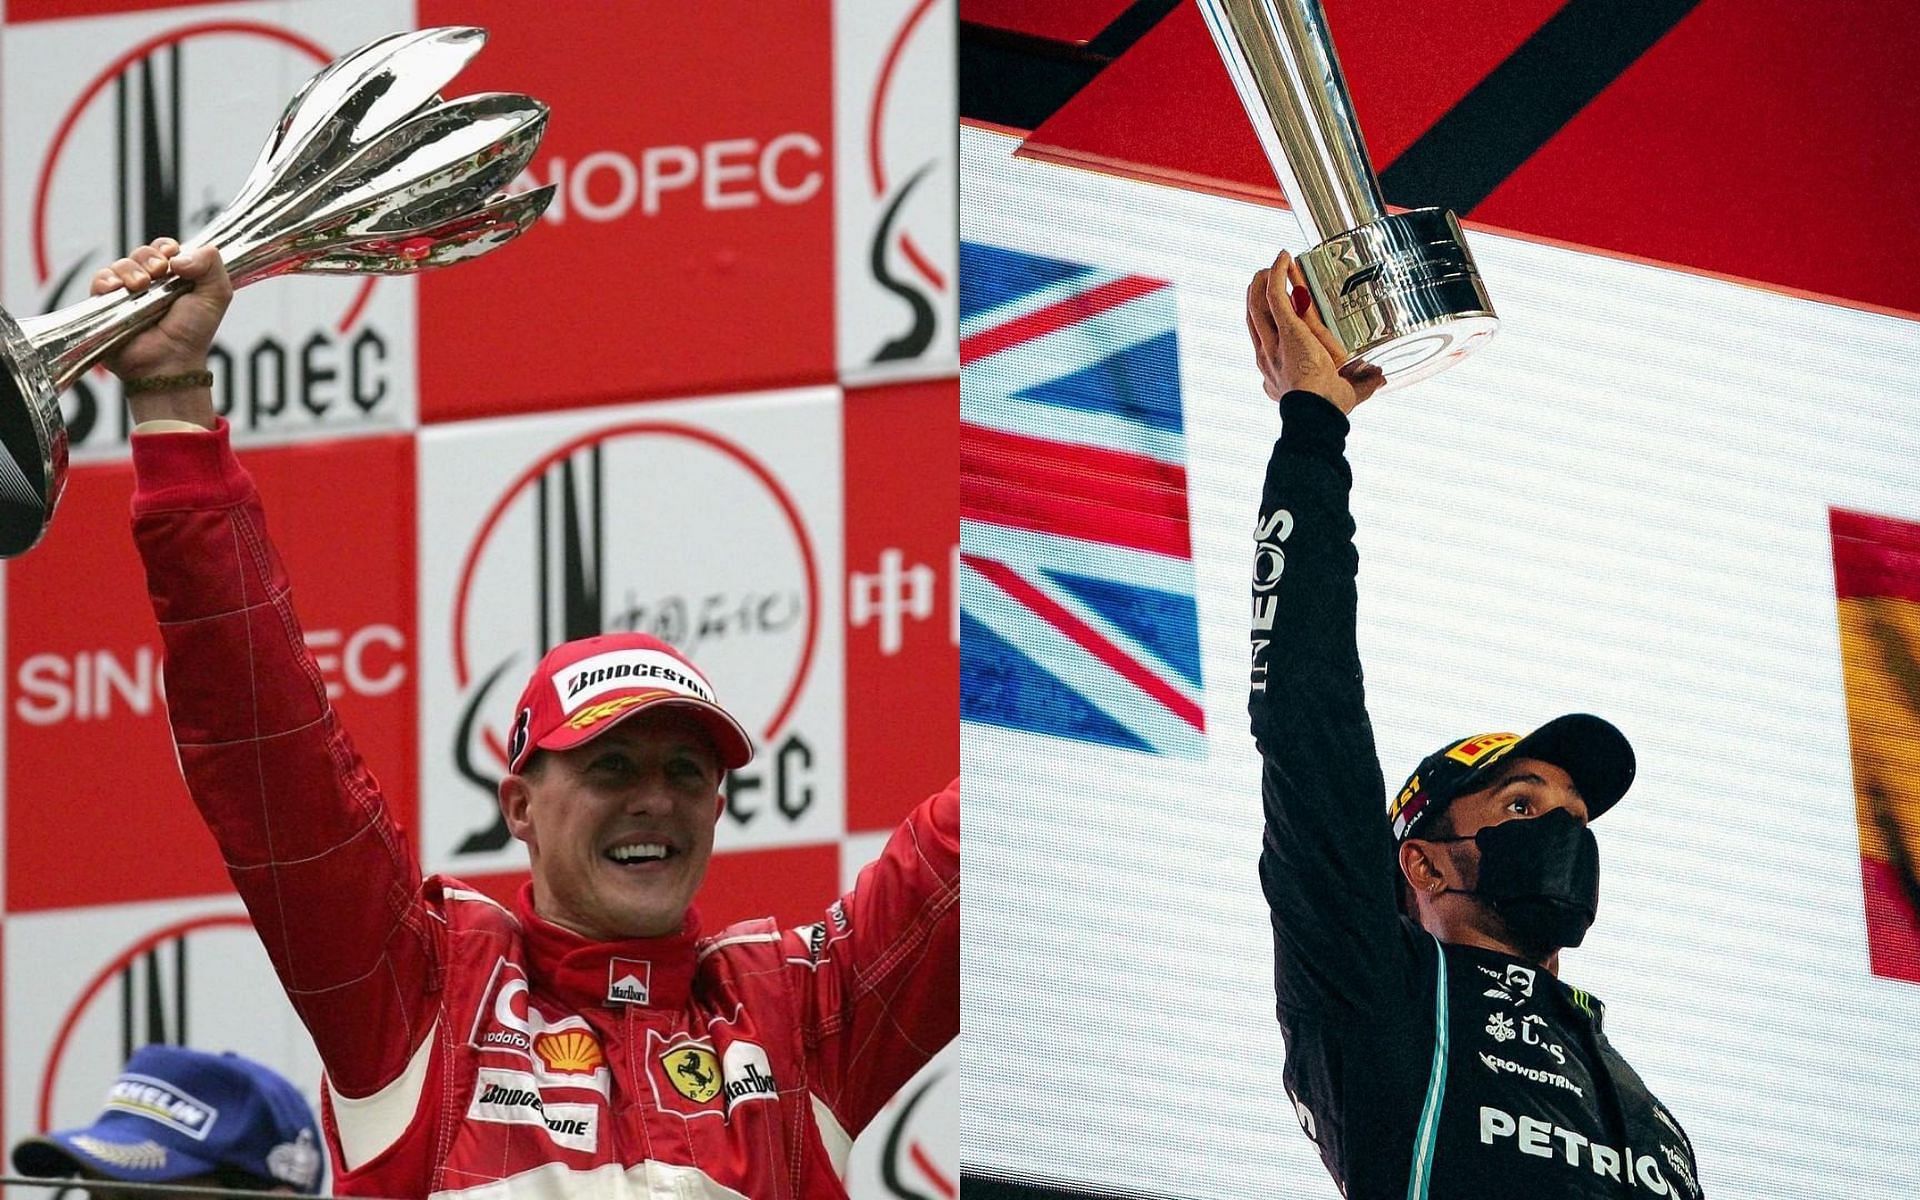 Michael Schumacher (left) and Lewis Hamilton (right) (via Instagram @michaelschumacher, @lewishamilton)